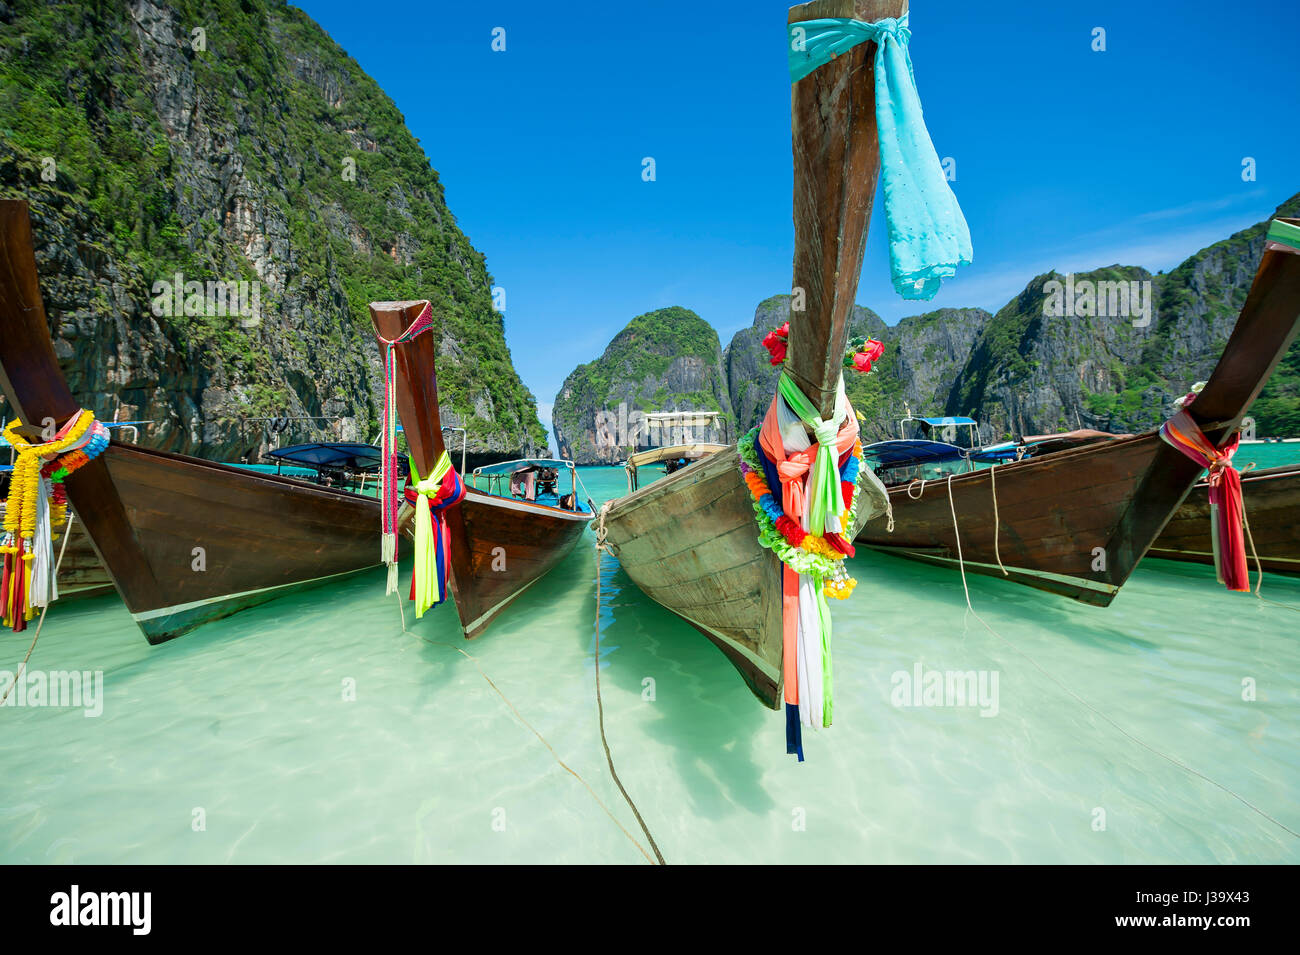 Traditional Thai wooden longtail boats with decorative sash ribbons at Maya Bay on Koh Phi Phi Leh island Stock Photo